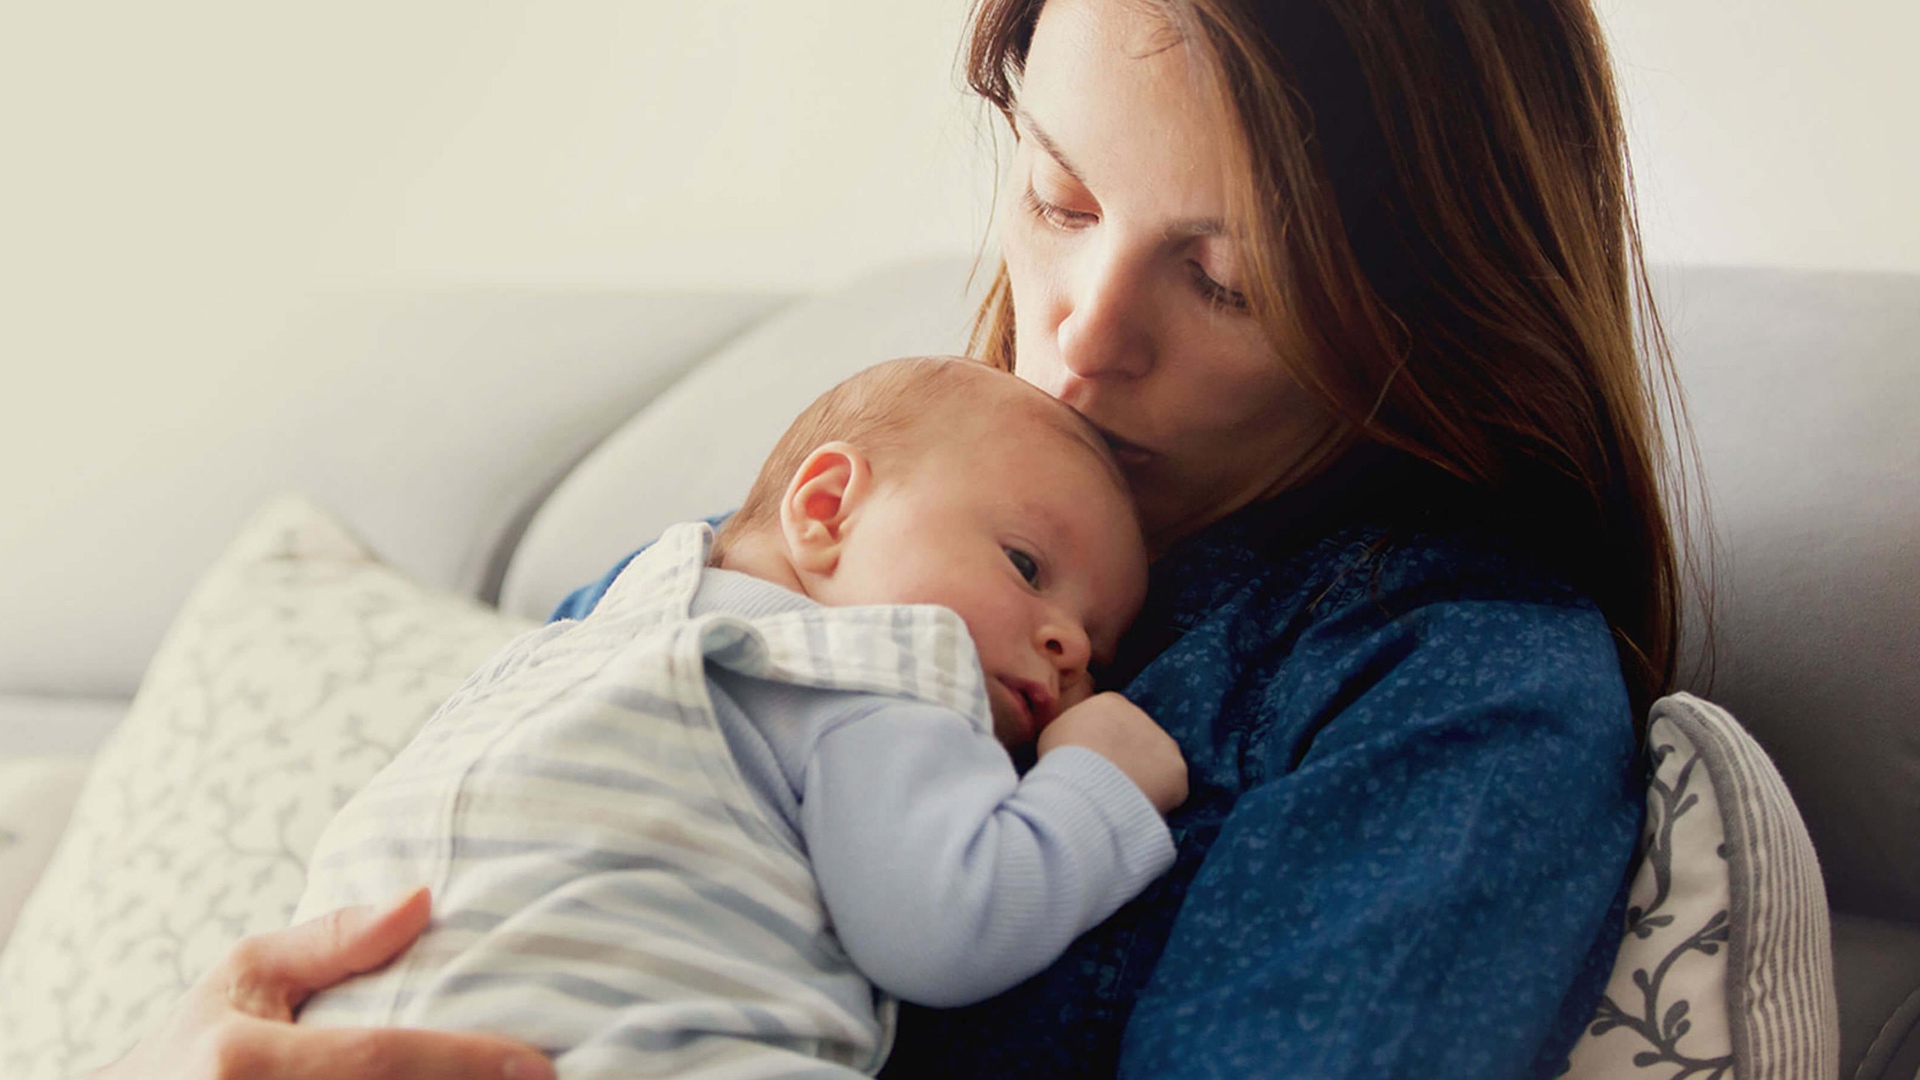 Mama & Wish Postpartum Essentials Kit for Mom - Post Partum